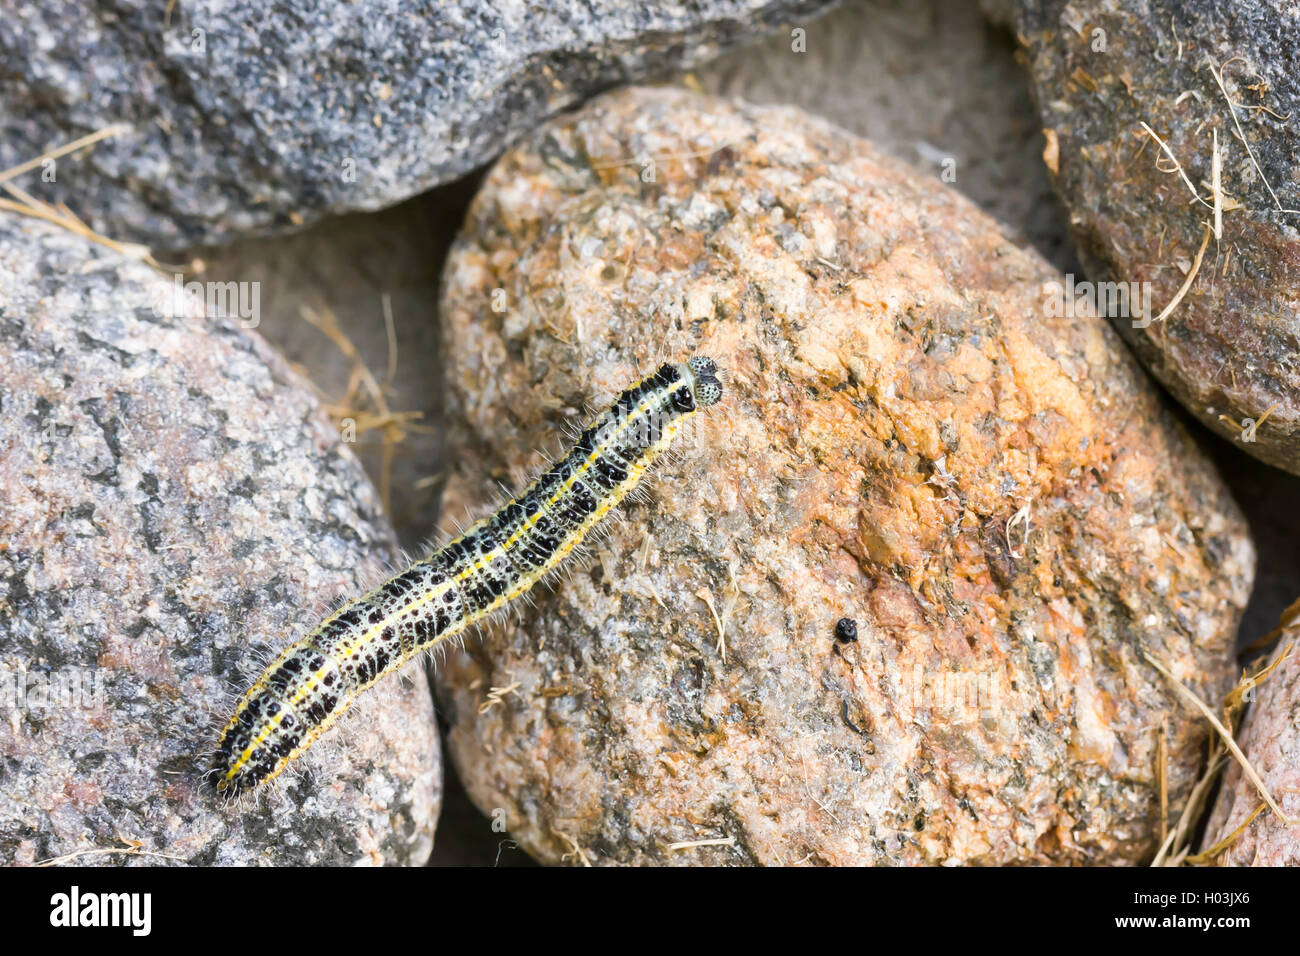 Primo piano della larva di farfalla strisciare su di una roccia Foto Stock